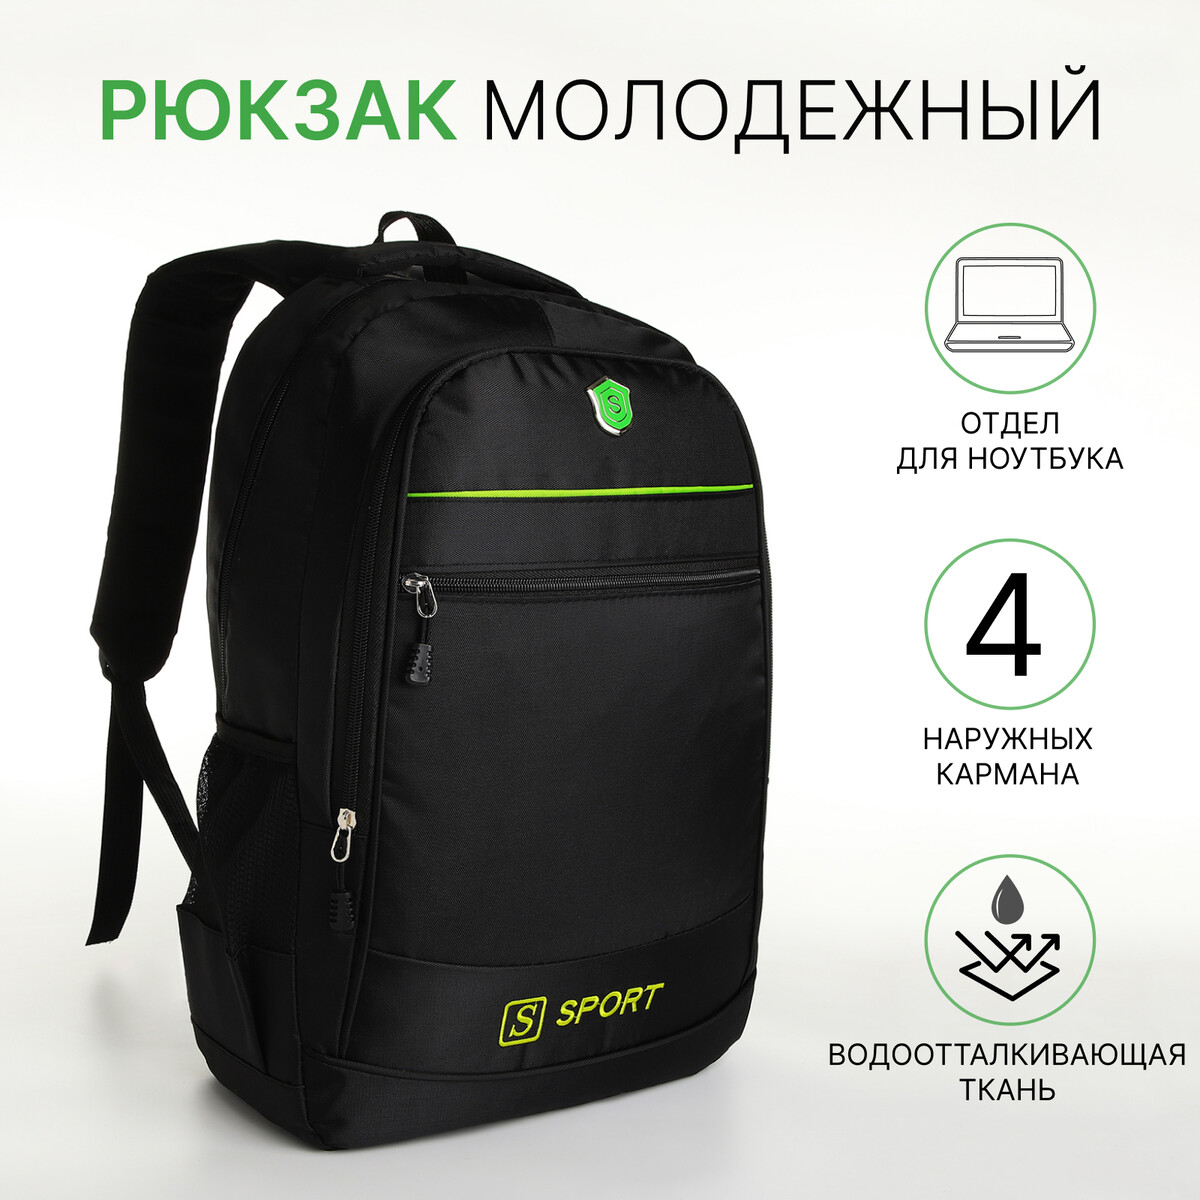 Рюкзак молодежный на молнии, 4 кармана, цвет черный/зеленый рюкзак молодежный из текстиля на молнии 3 кармана сумка держатель для чемодана зеленый